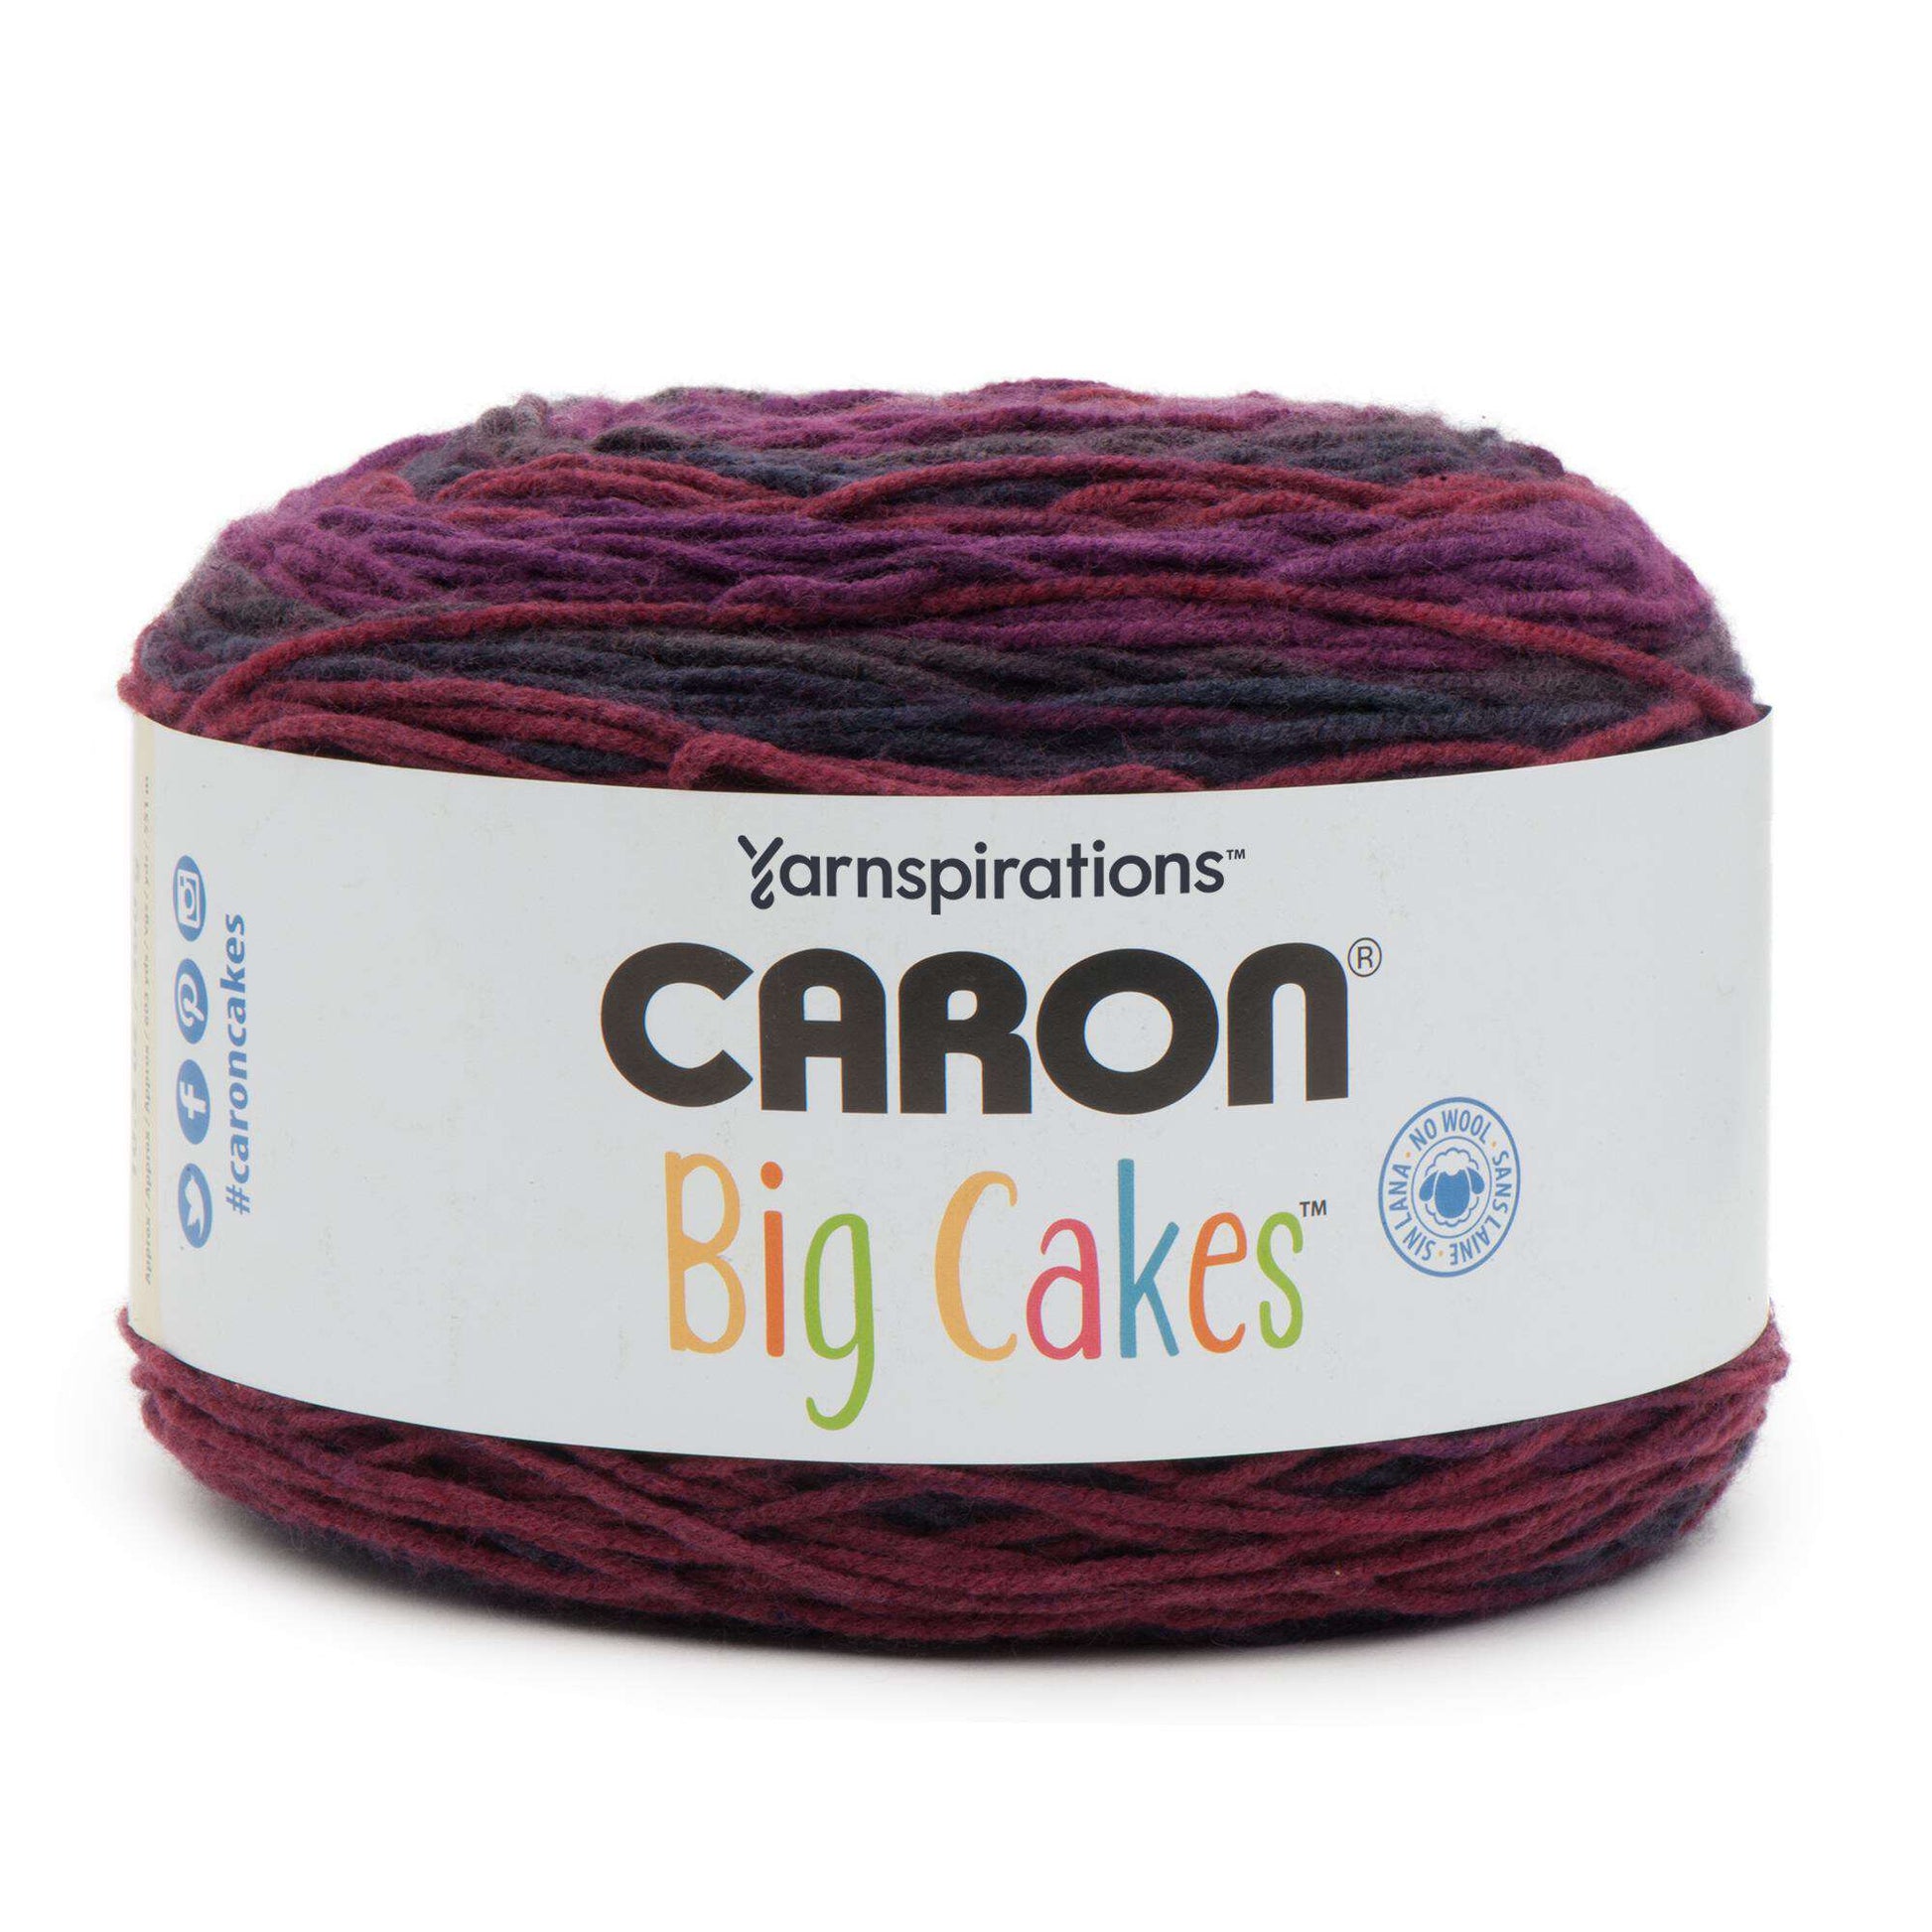 Caron Big Cakes Self Striping Yarn ~ 603 yd/551 M / 10.5oz/300 G Each (Toffee Brickle)